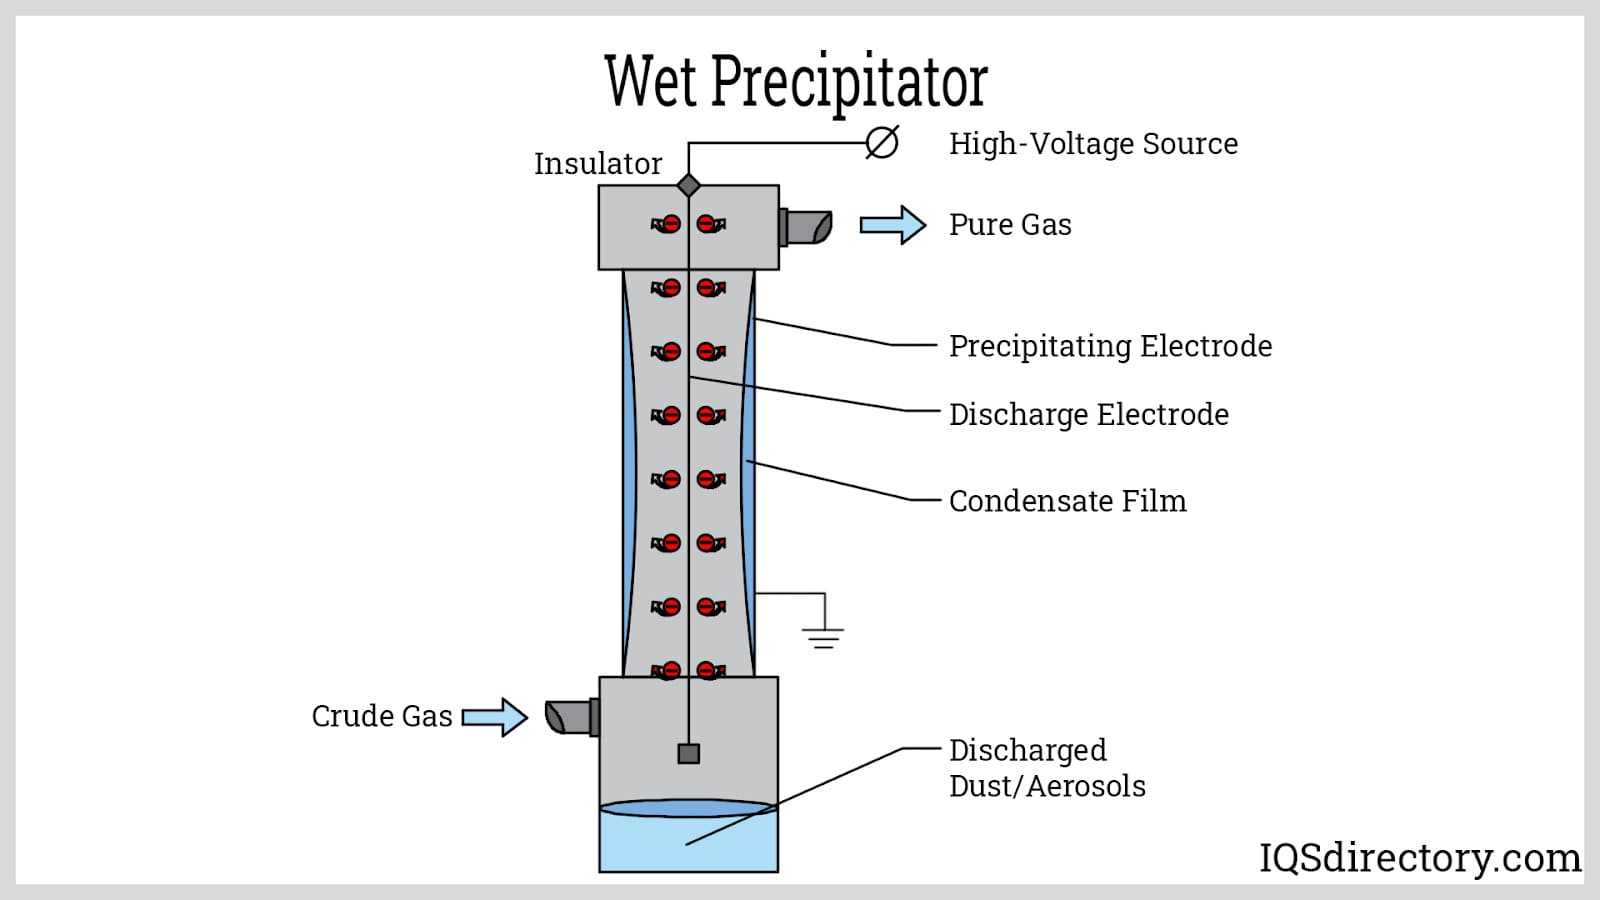 Wet Precipitator